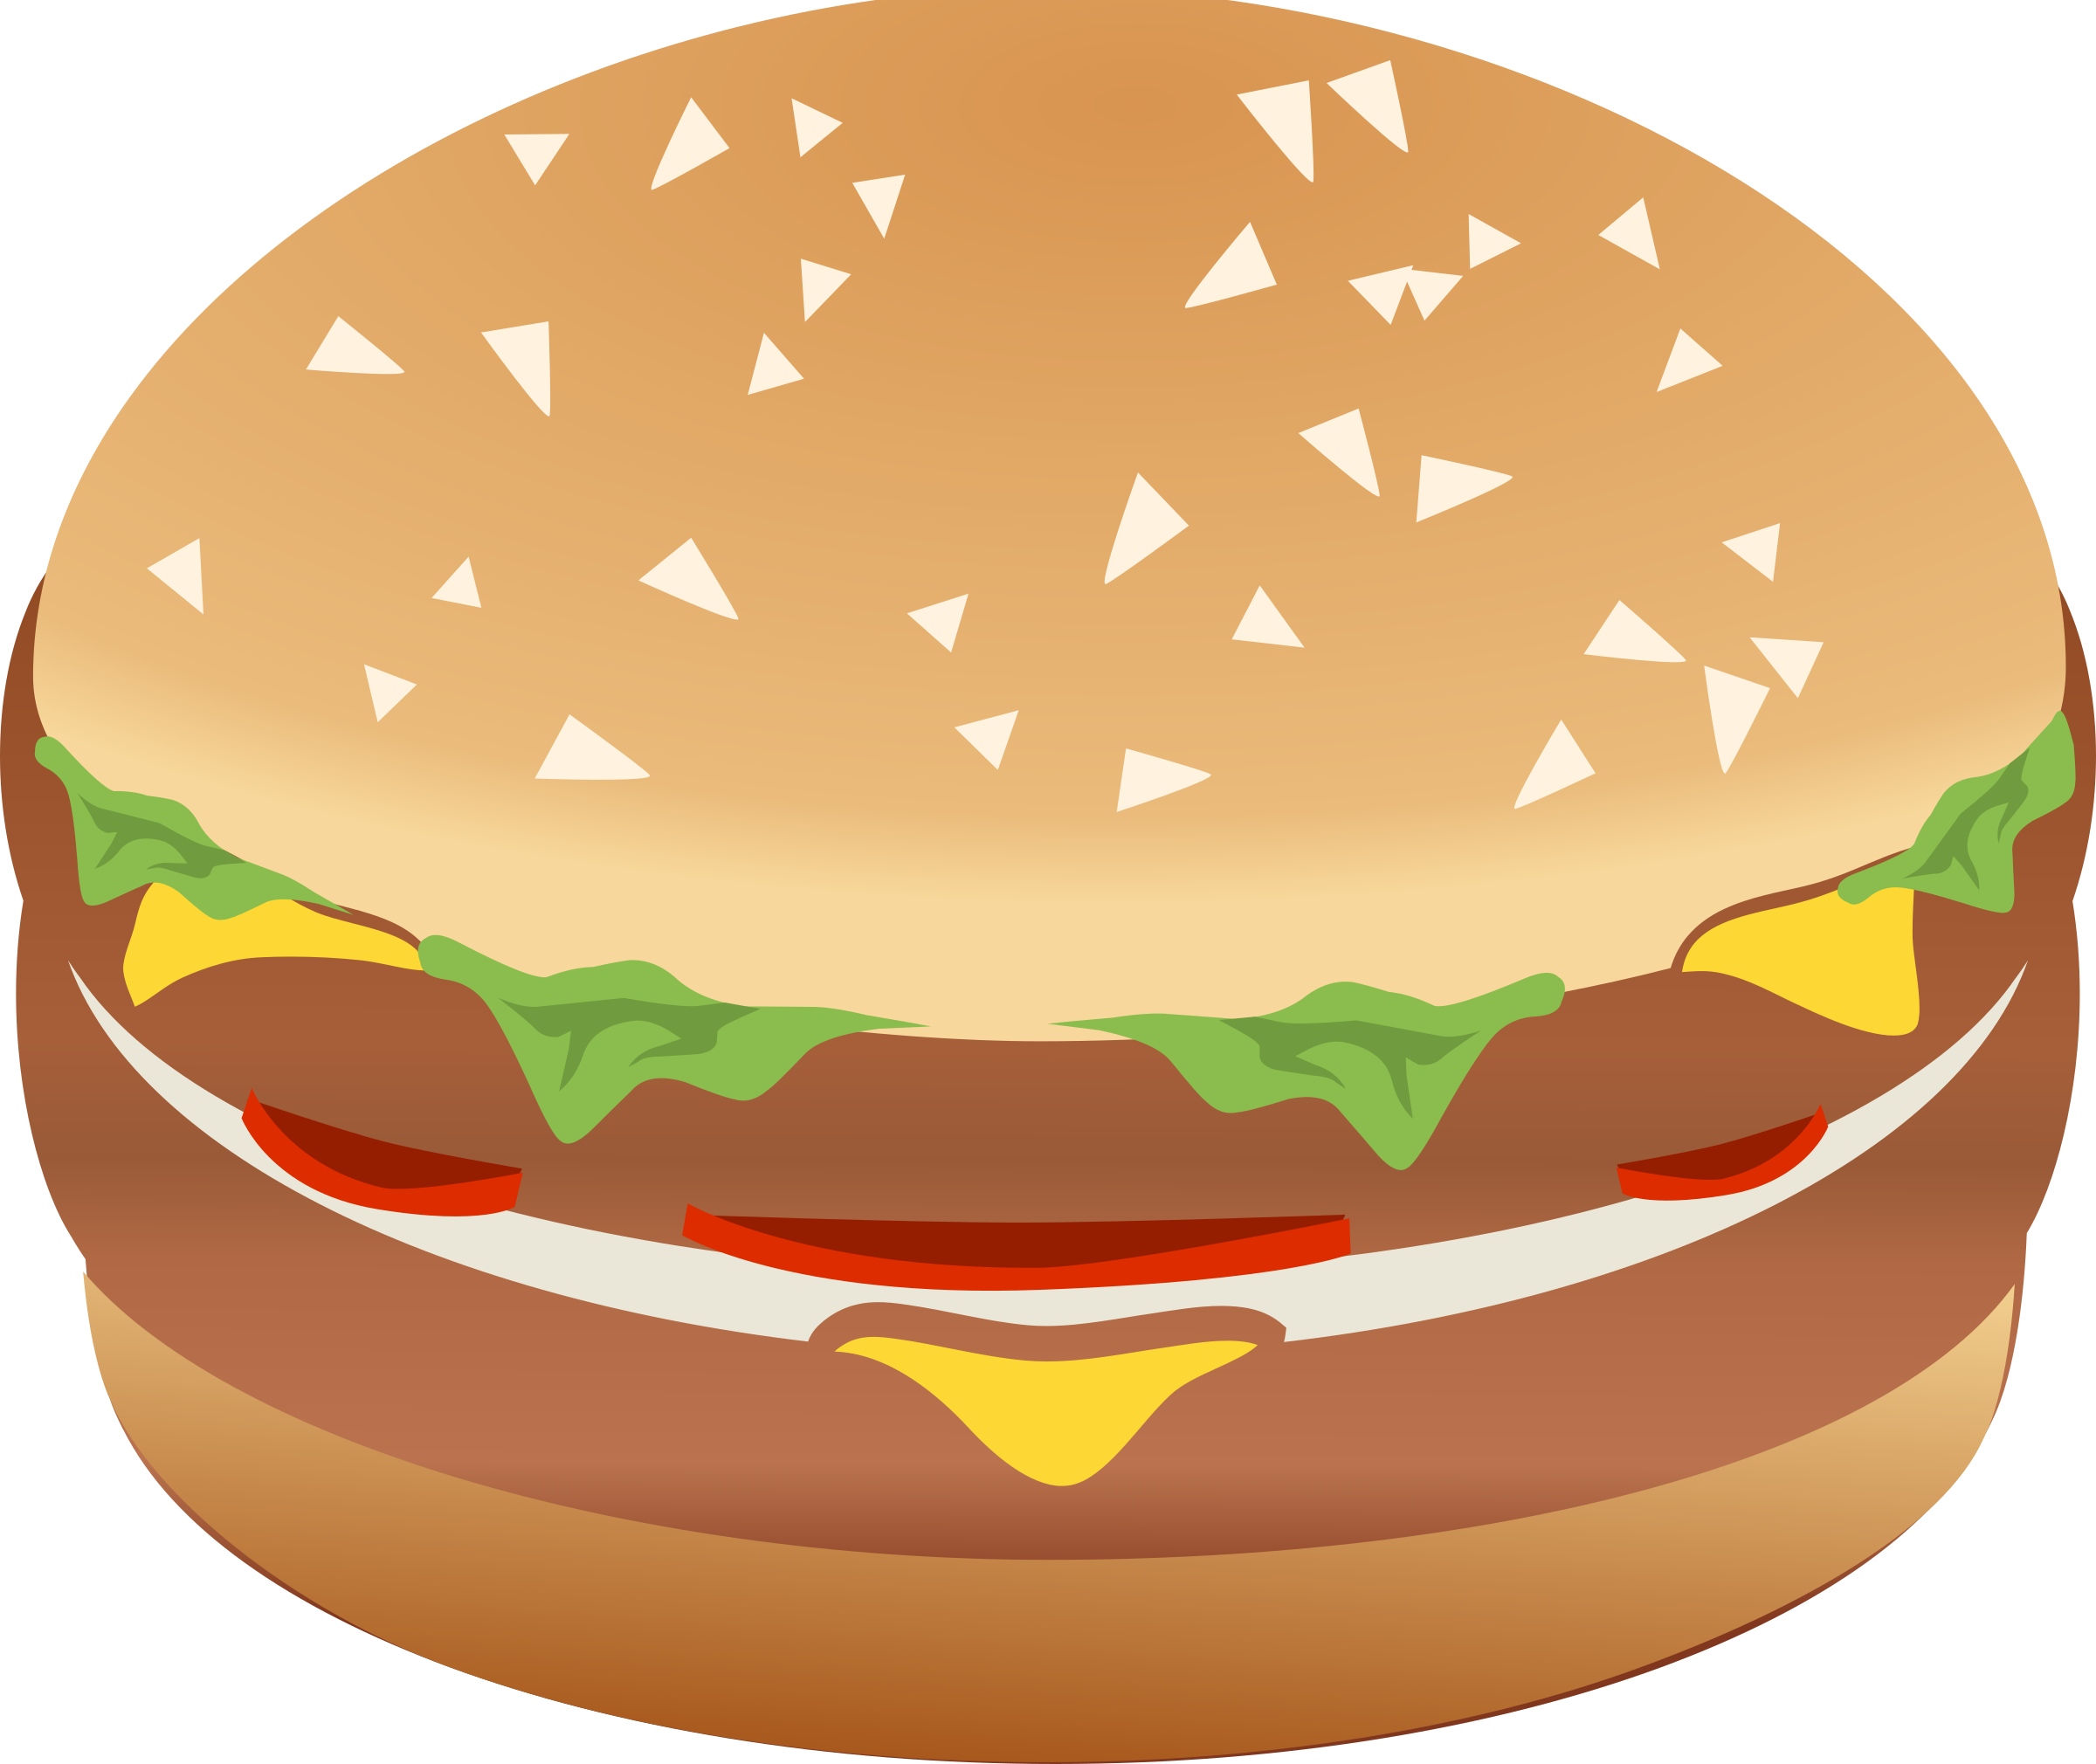 Sandwich clipart hamburger. Burger remix with colors